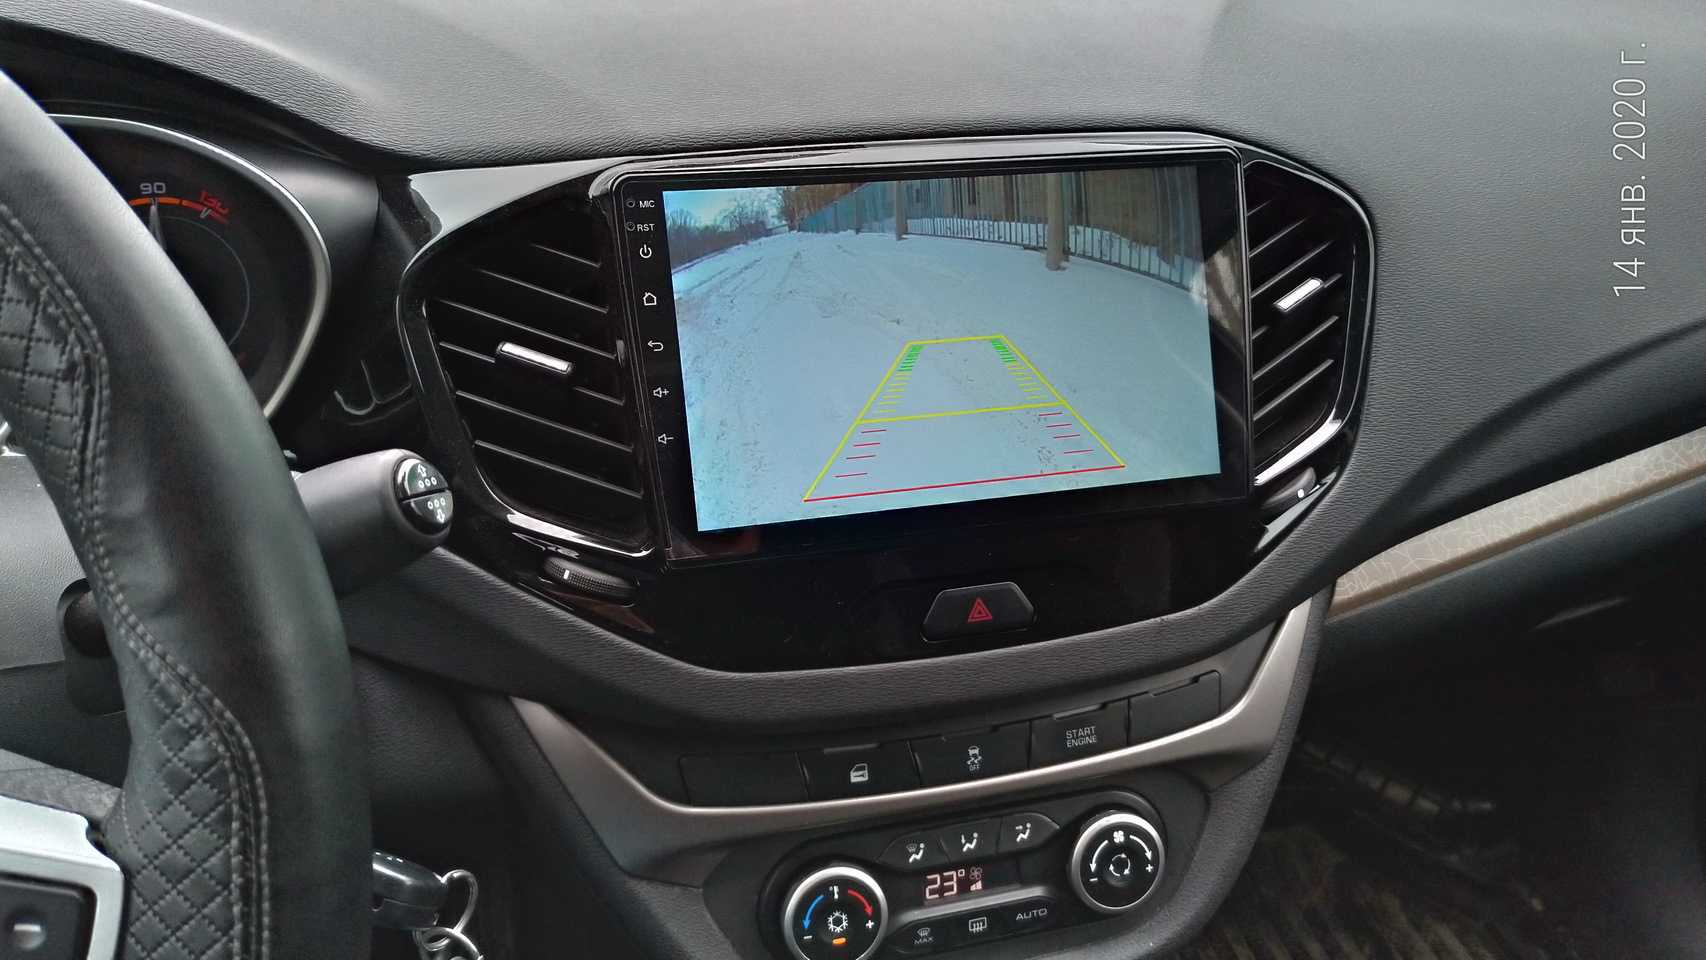 2020 lada vesta (лада веста) сменила заводскую магнитолу на мультимедийную "голову" яндекс авто.